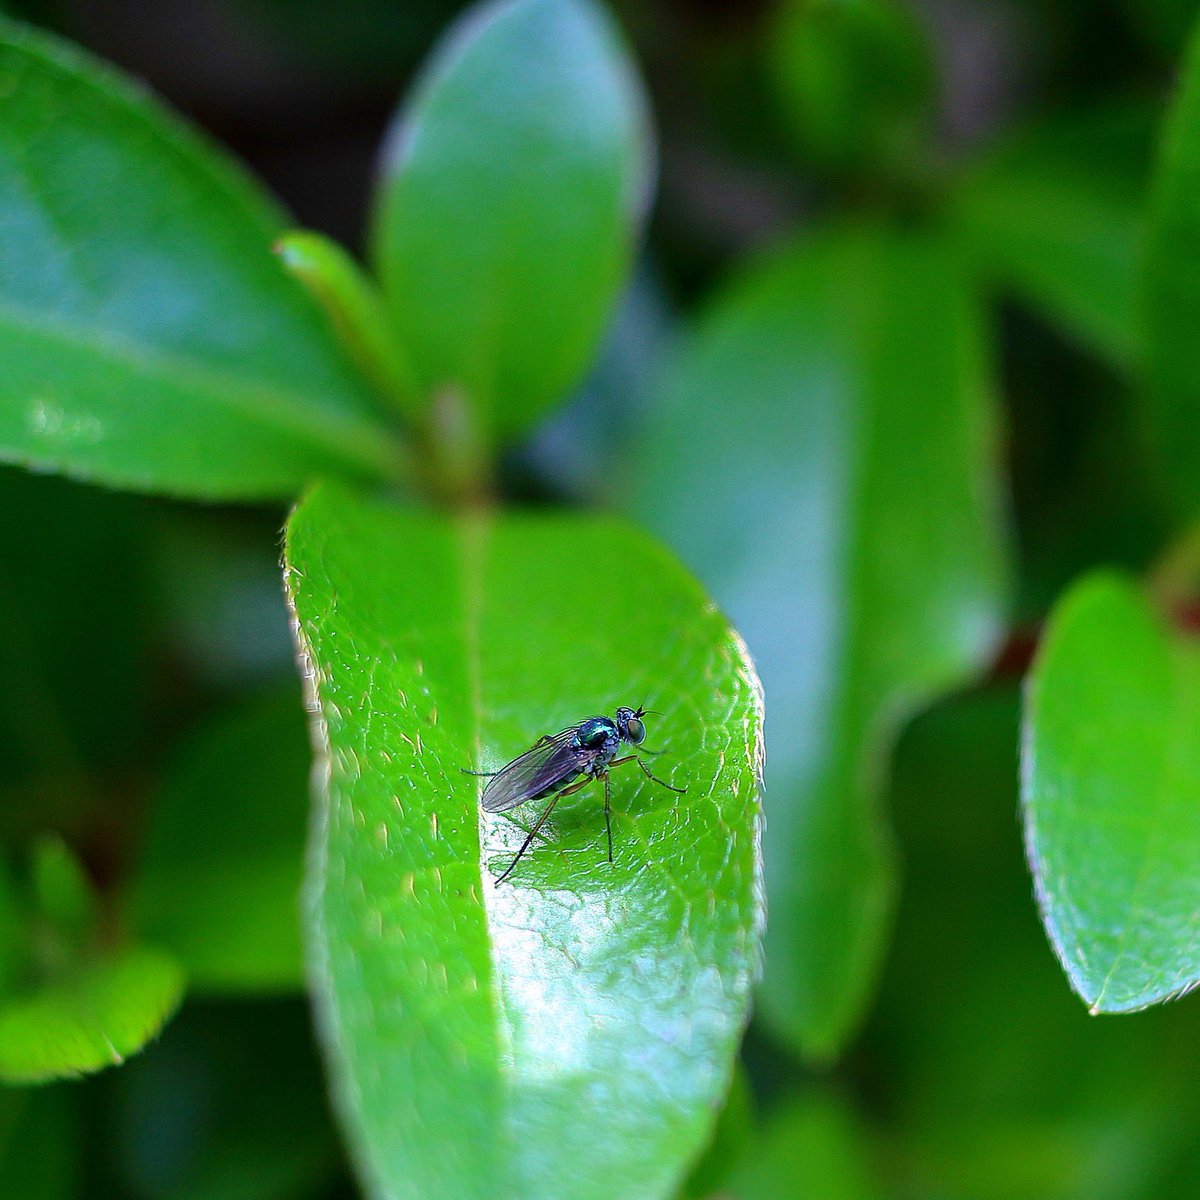 みっちょん 足袋ーず Di Twitter アシナガバエ メタリックな青緑色に光るハエ 名前はハエだけどアブの仲間 アブラムシやダニ等を食べるので 農家さん的には益虫みたい Insect Longleggedflies Flies ハエ 蝿 アブ 虻 大船フラワーセンター T Co